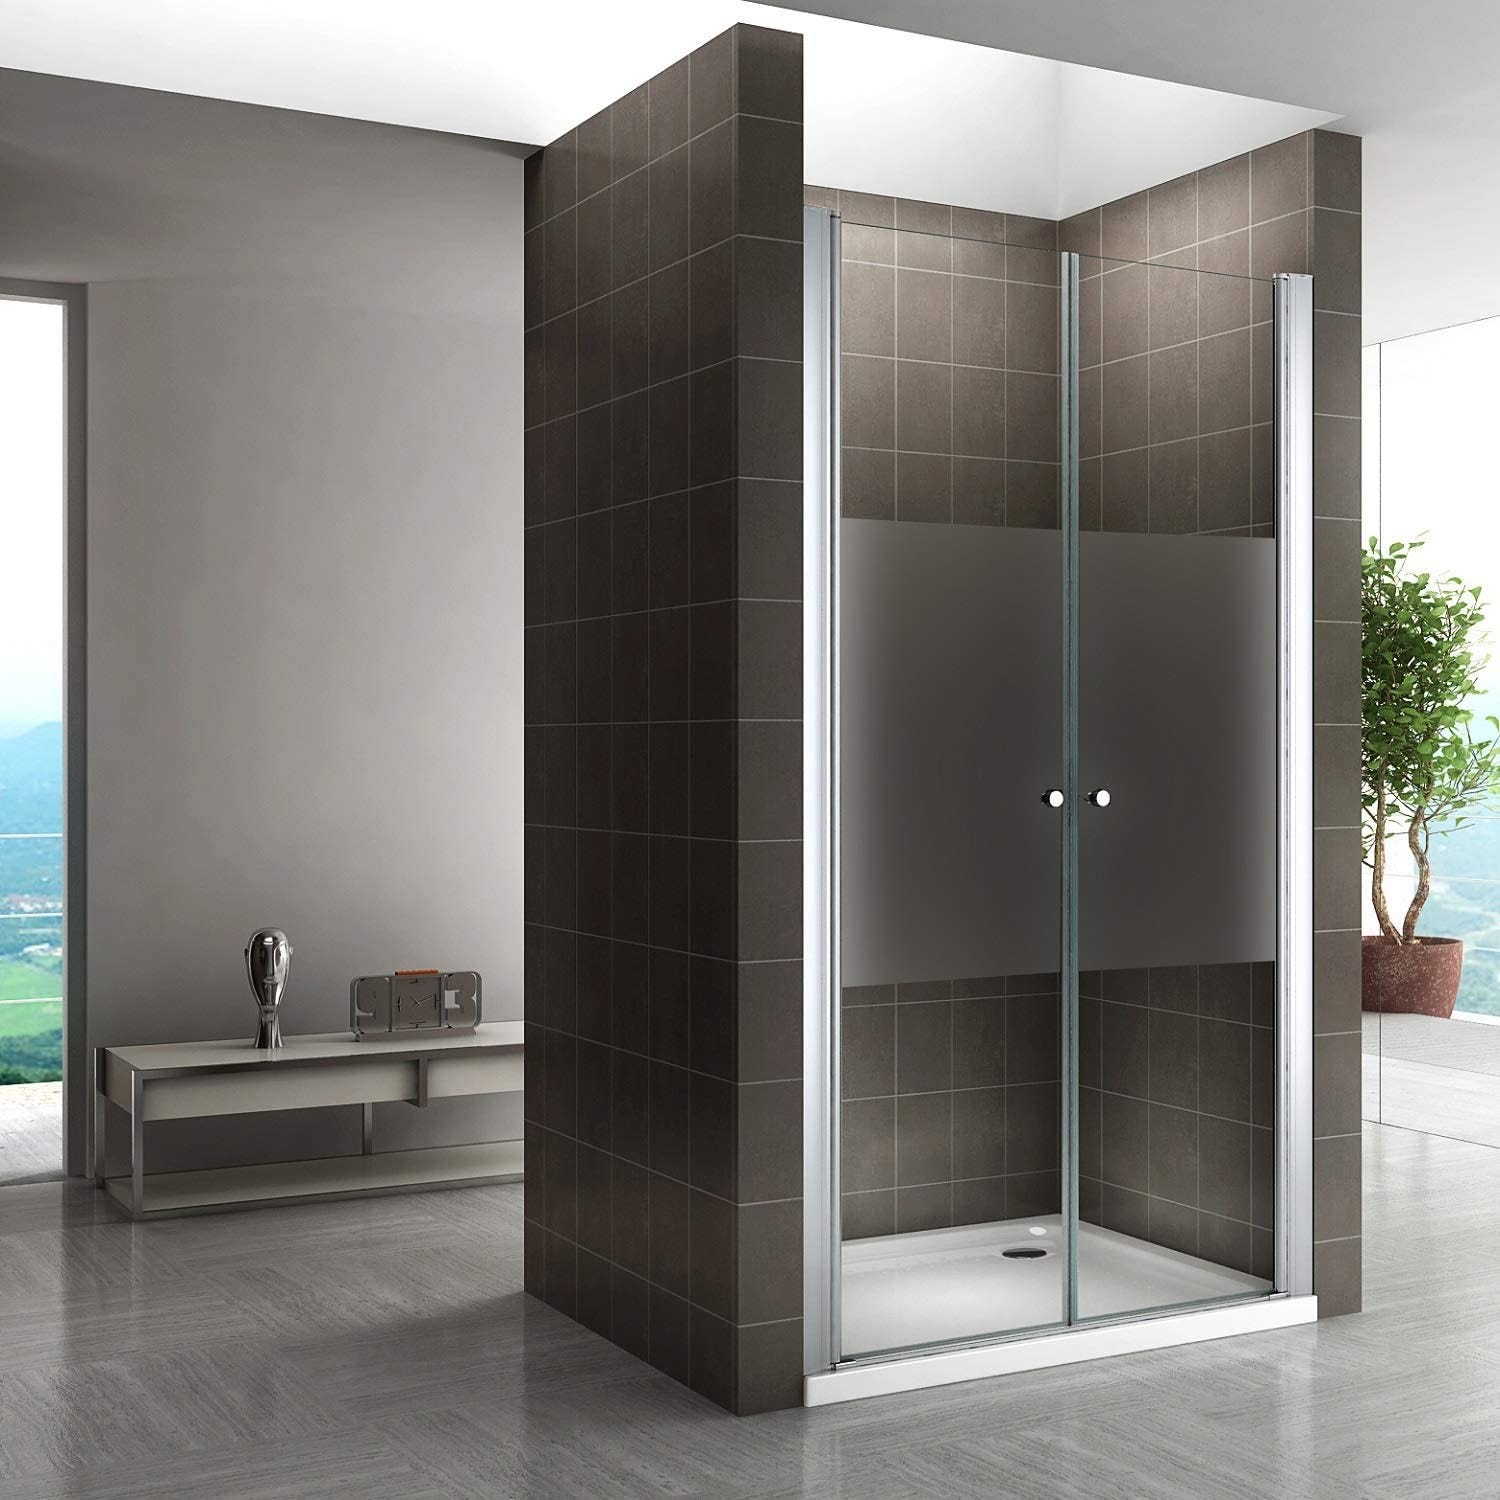 GINA Porte de douche H 185 cm Largeur Réglable 72 à 76 cm verre semi-opaque 5